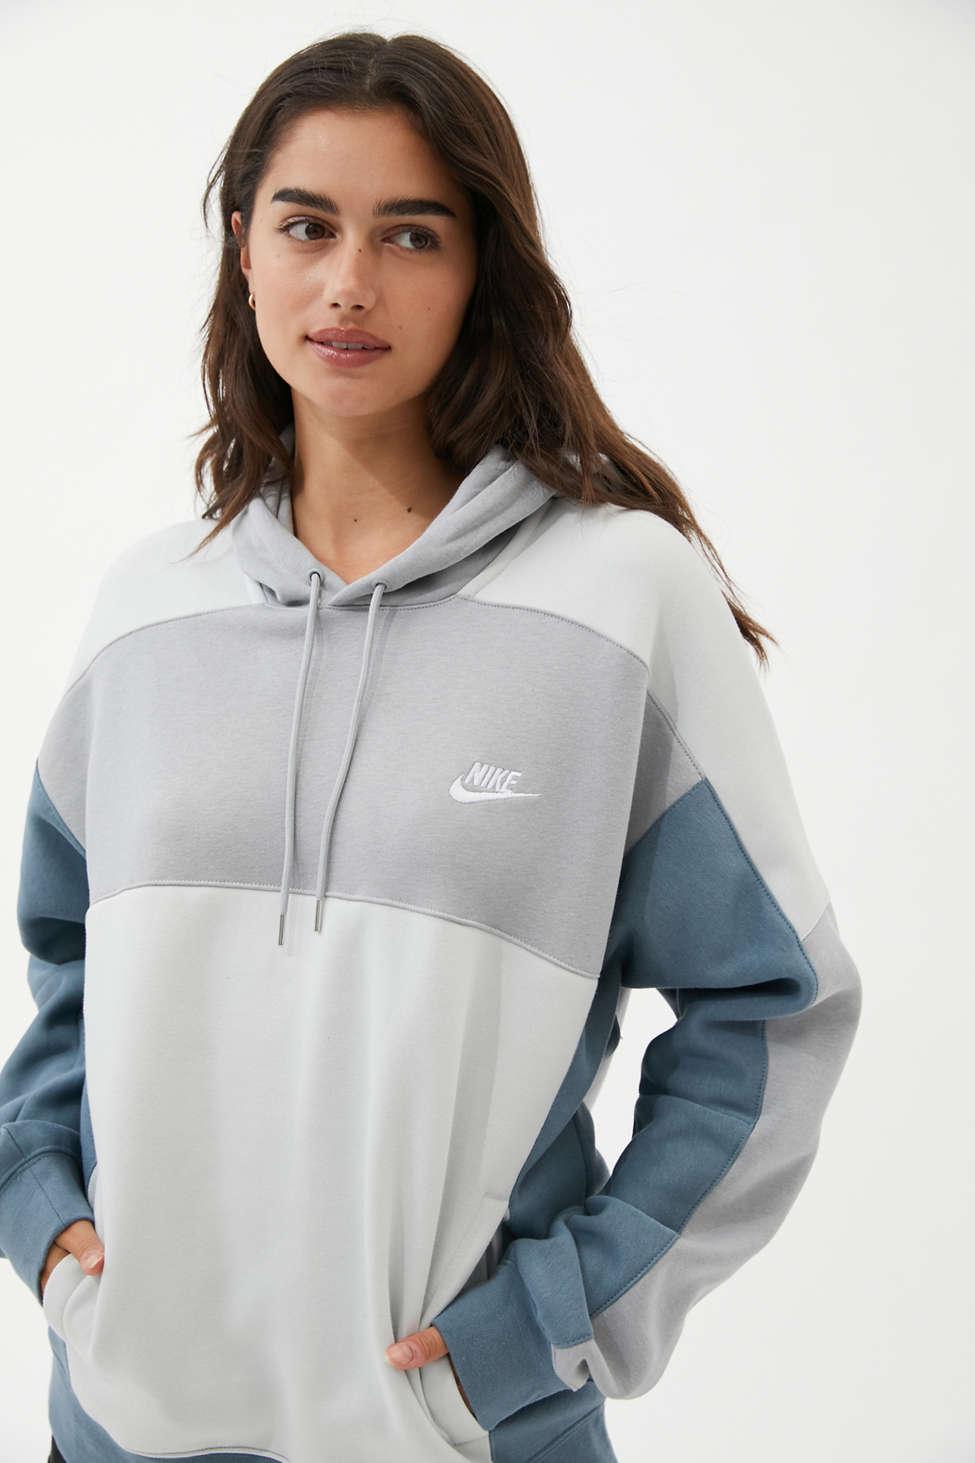 Nike Oversized Colorblock Hoodie Sweatshirt in Blue - Lyst